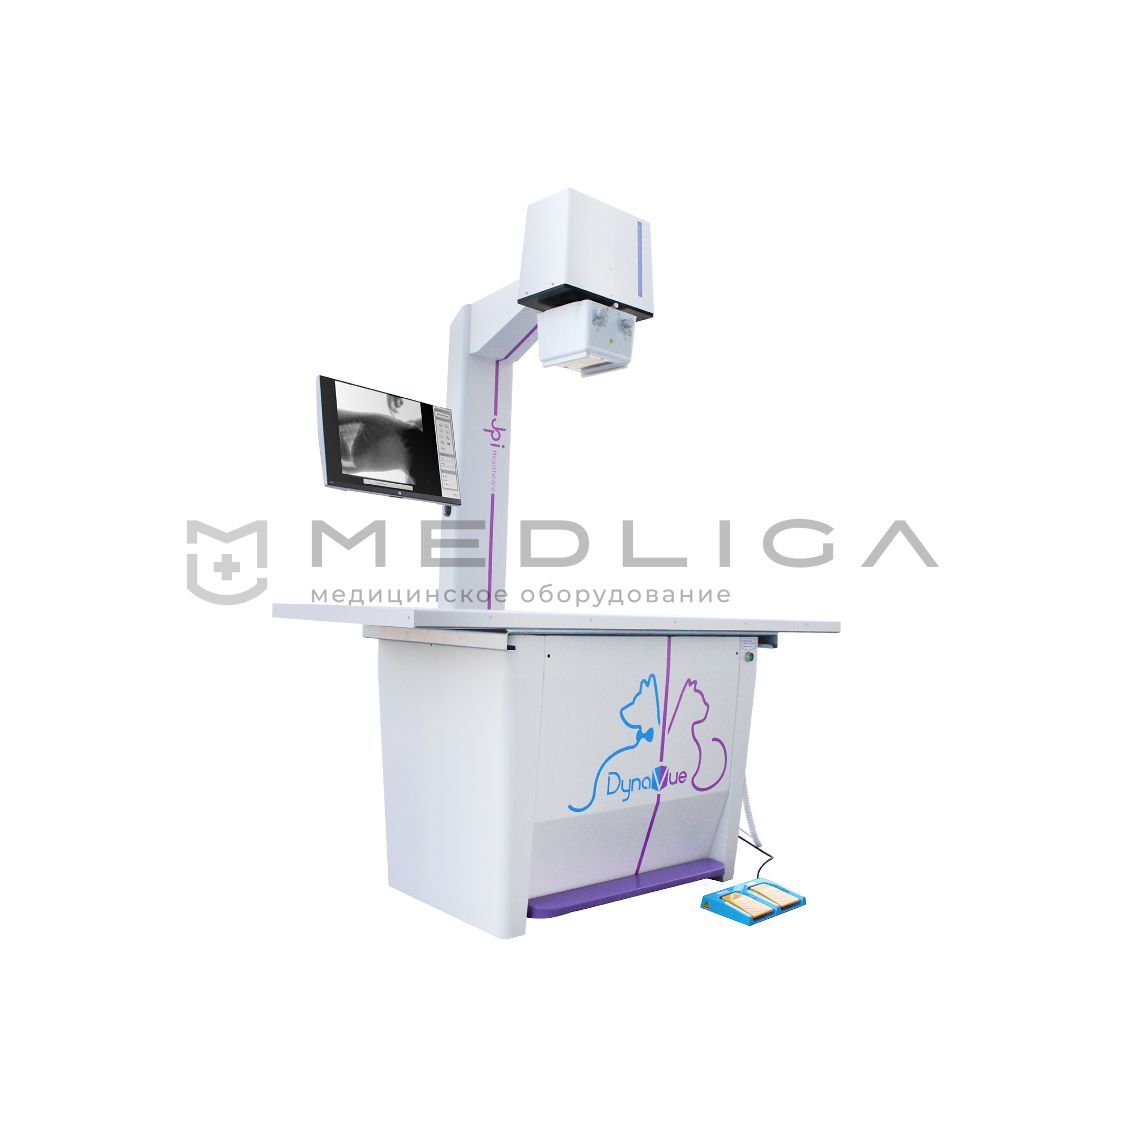 Цифровая рентгеновская система 2-в-1 JPI DynaVue